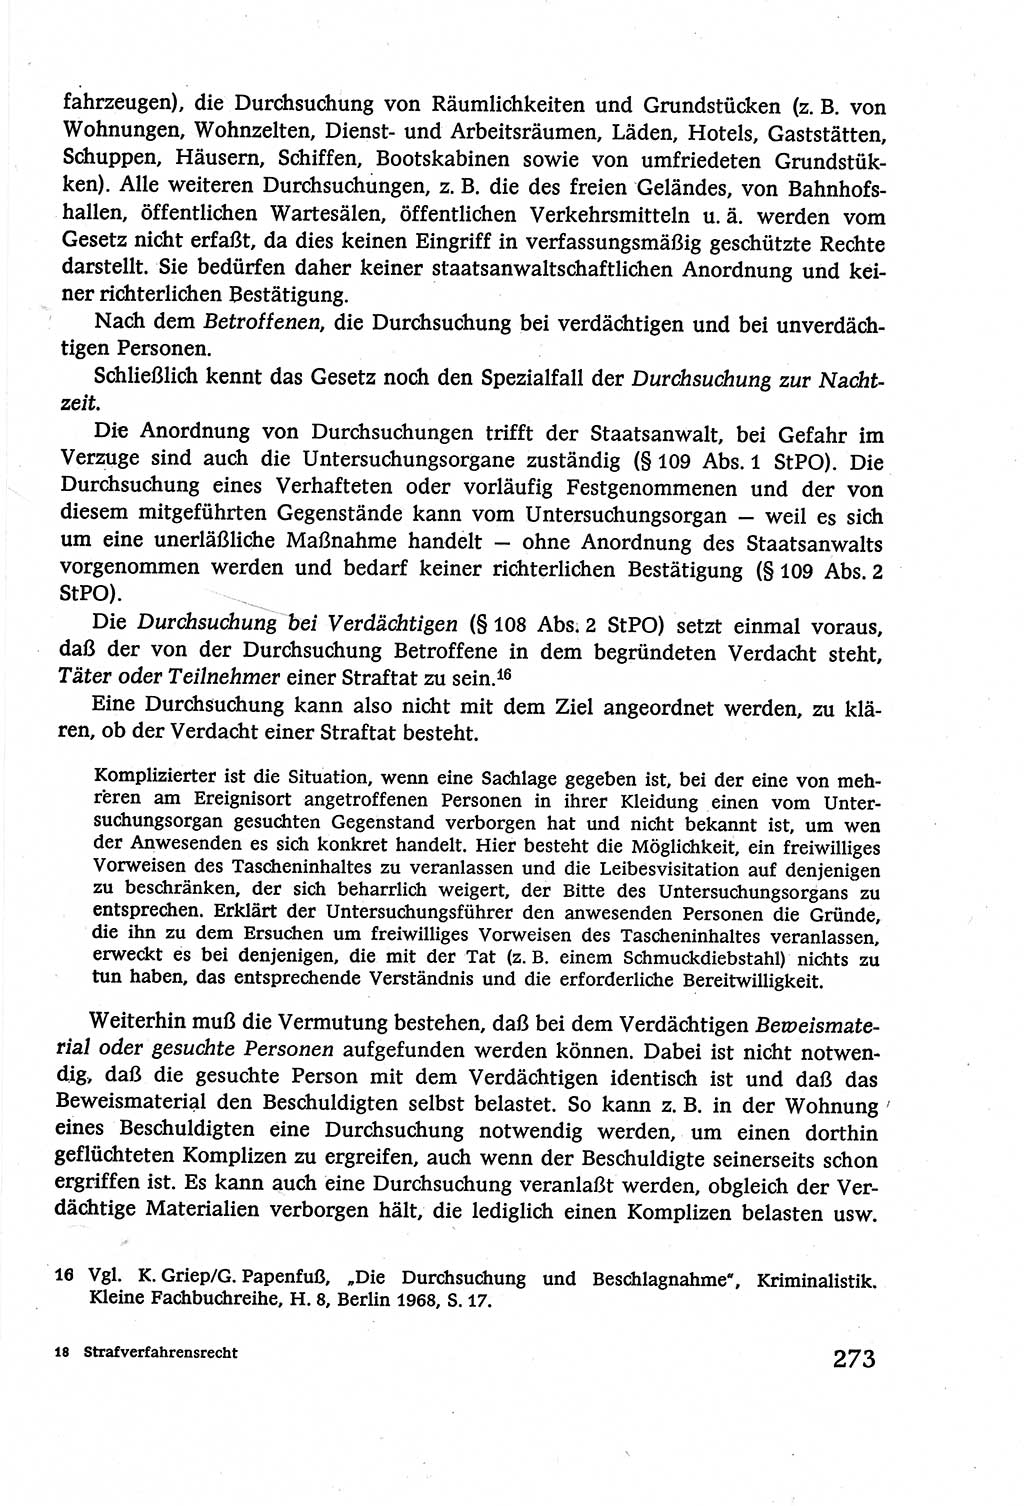 Strafverfahrensrecht [Deutsche Demokratische Republik (DDR)], Lehrbuch 1977, Seite 273 (Strafverf.-R. DDR Lb. 1977, S. 273)